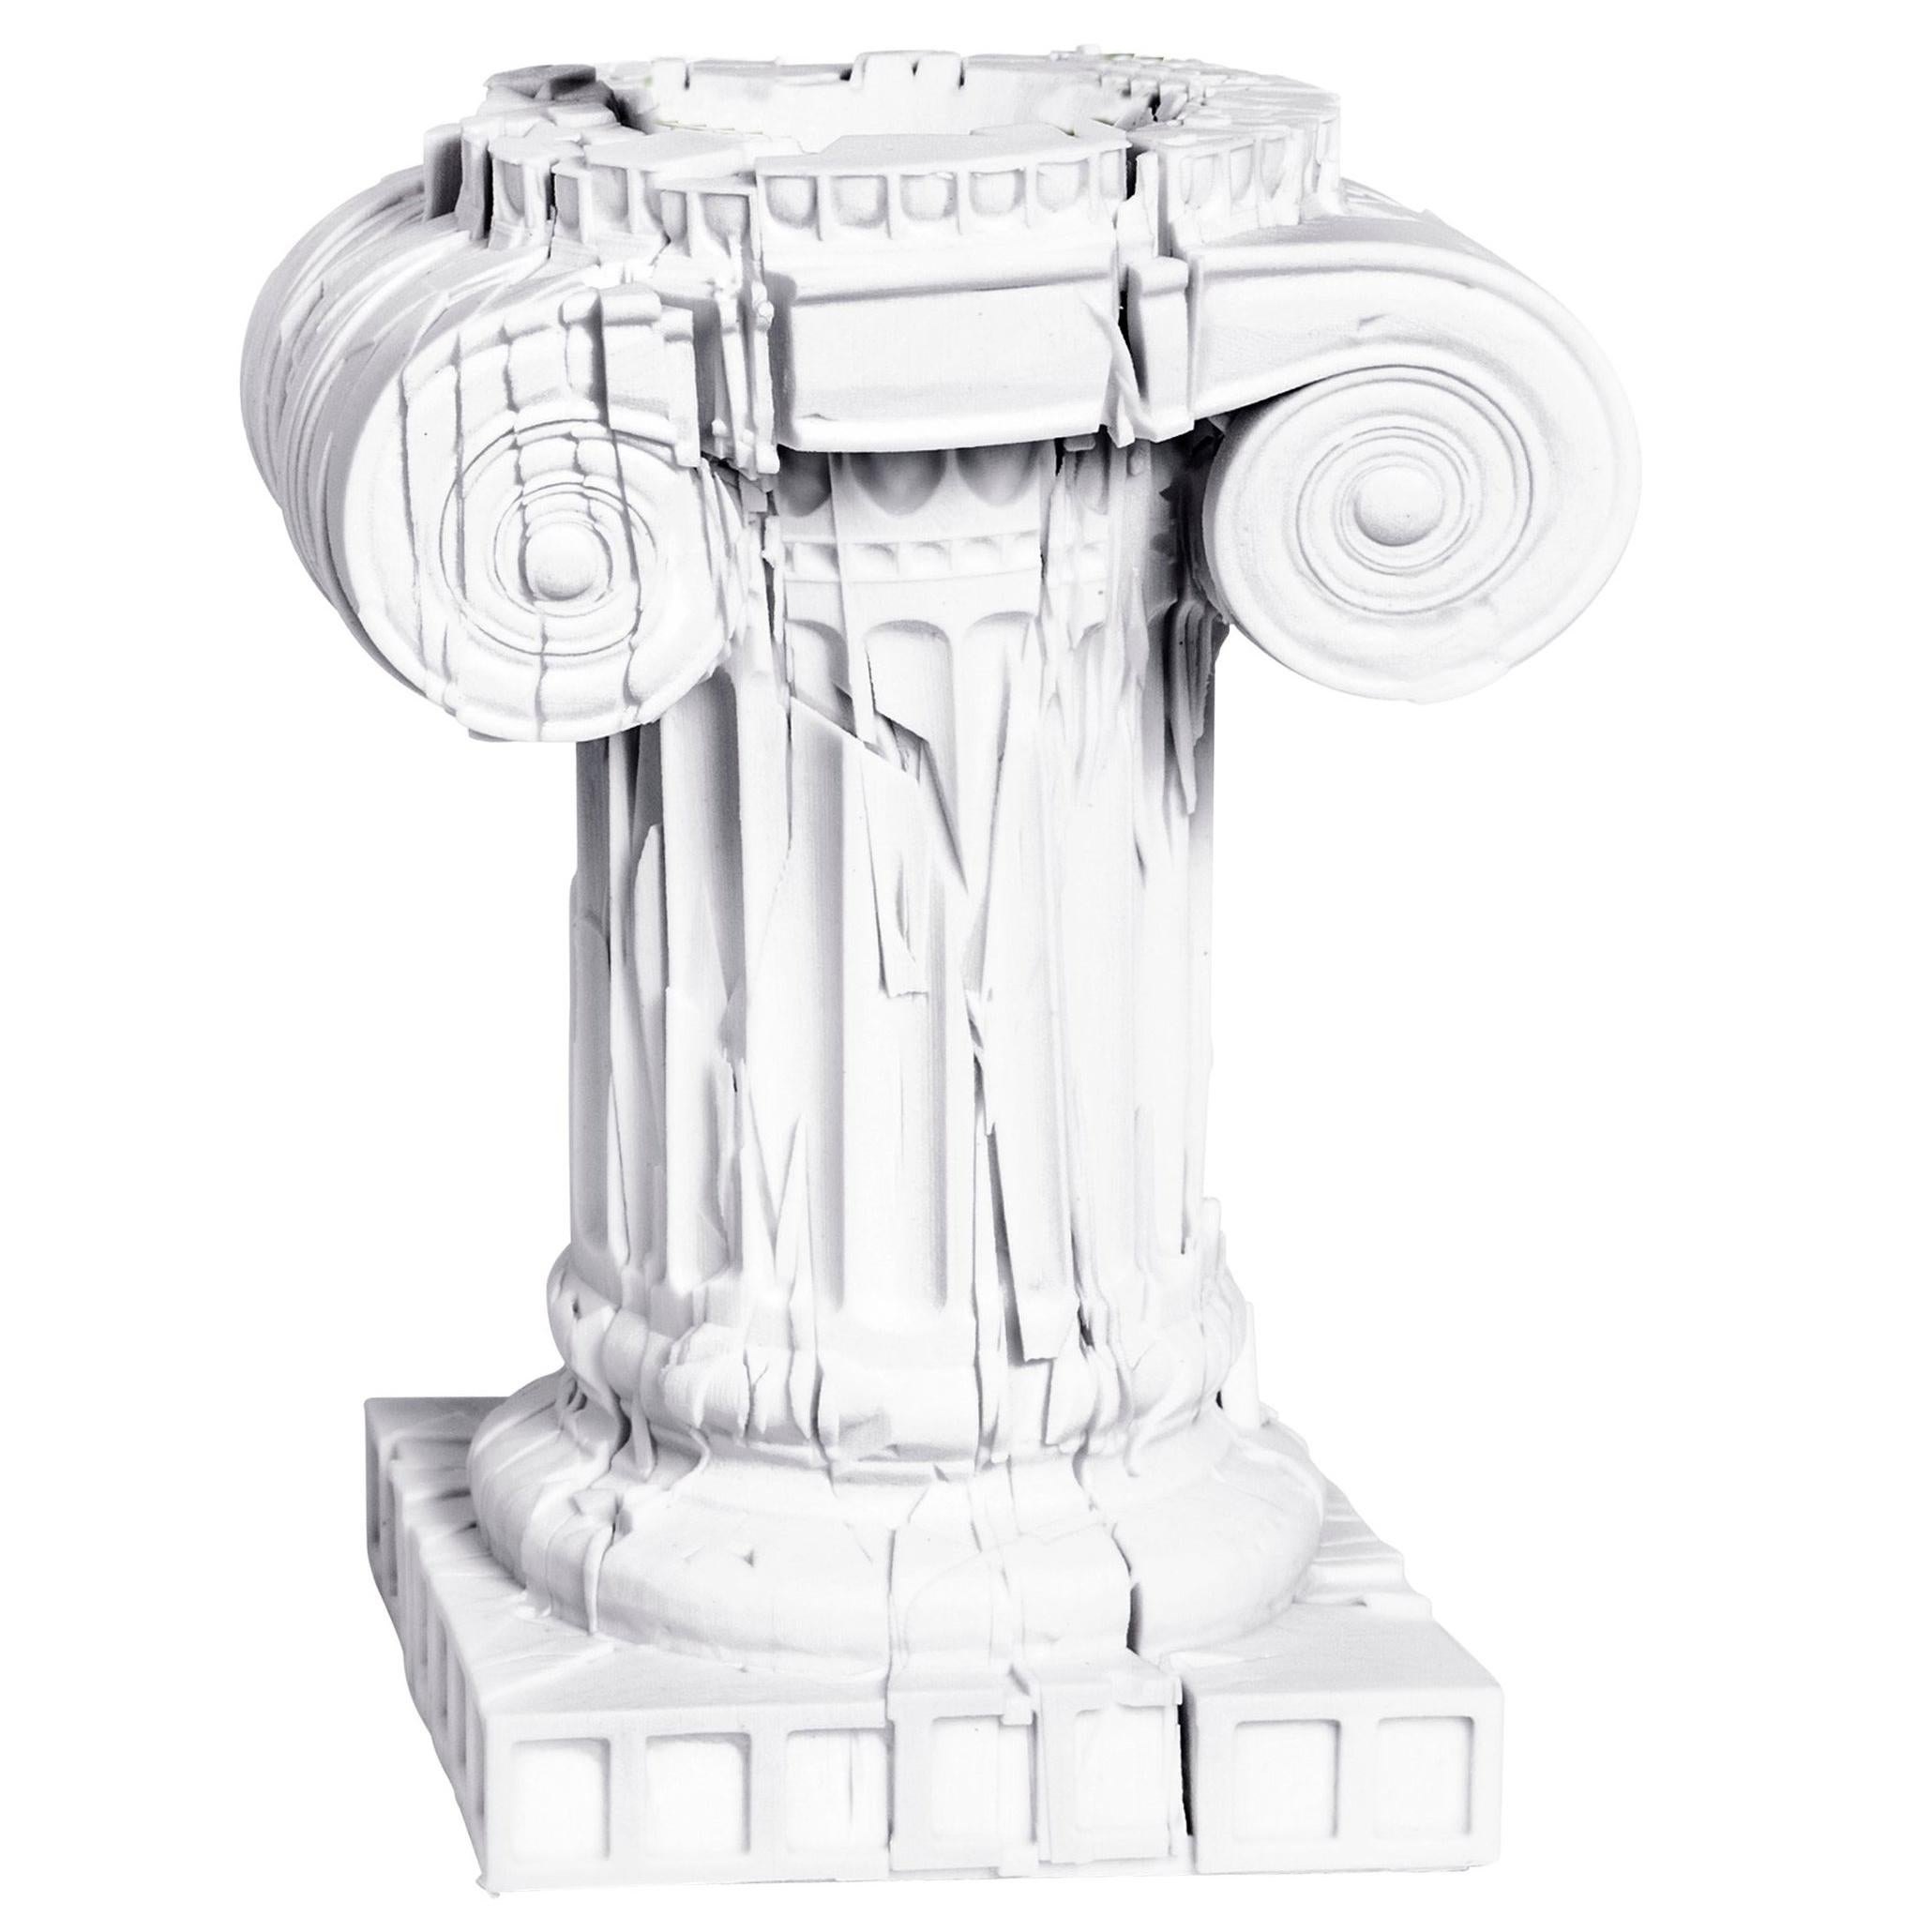 3D-Printed Porcelain "Them Romans" Vases